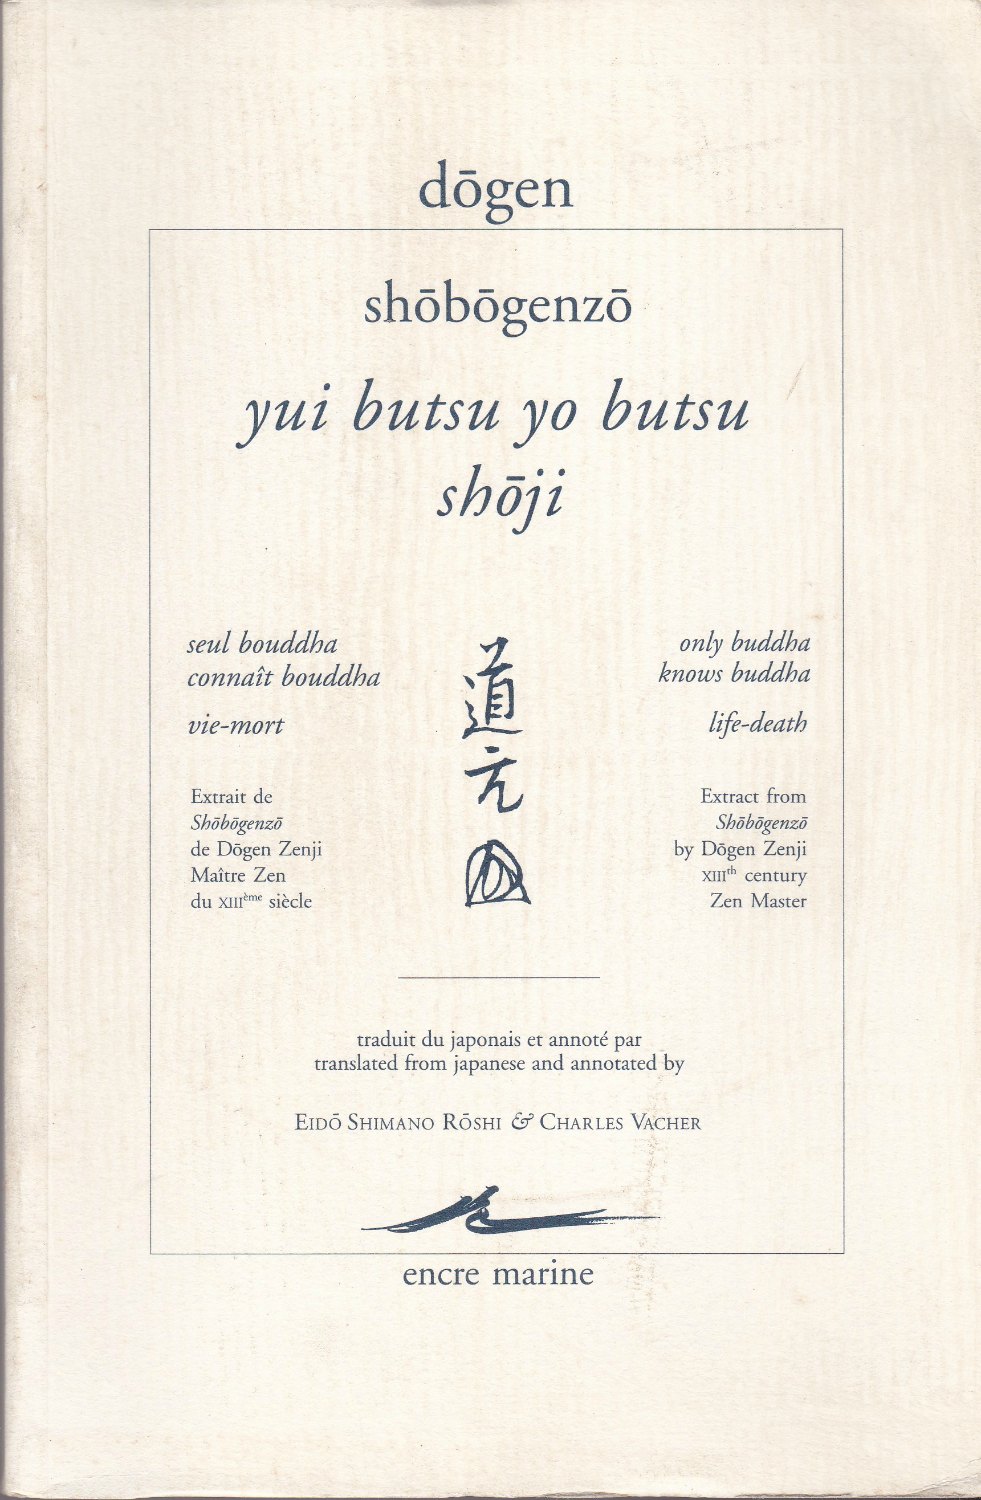 Yui butsu yo butsu ; Shoji.　(Shobogenzo / Dogen)